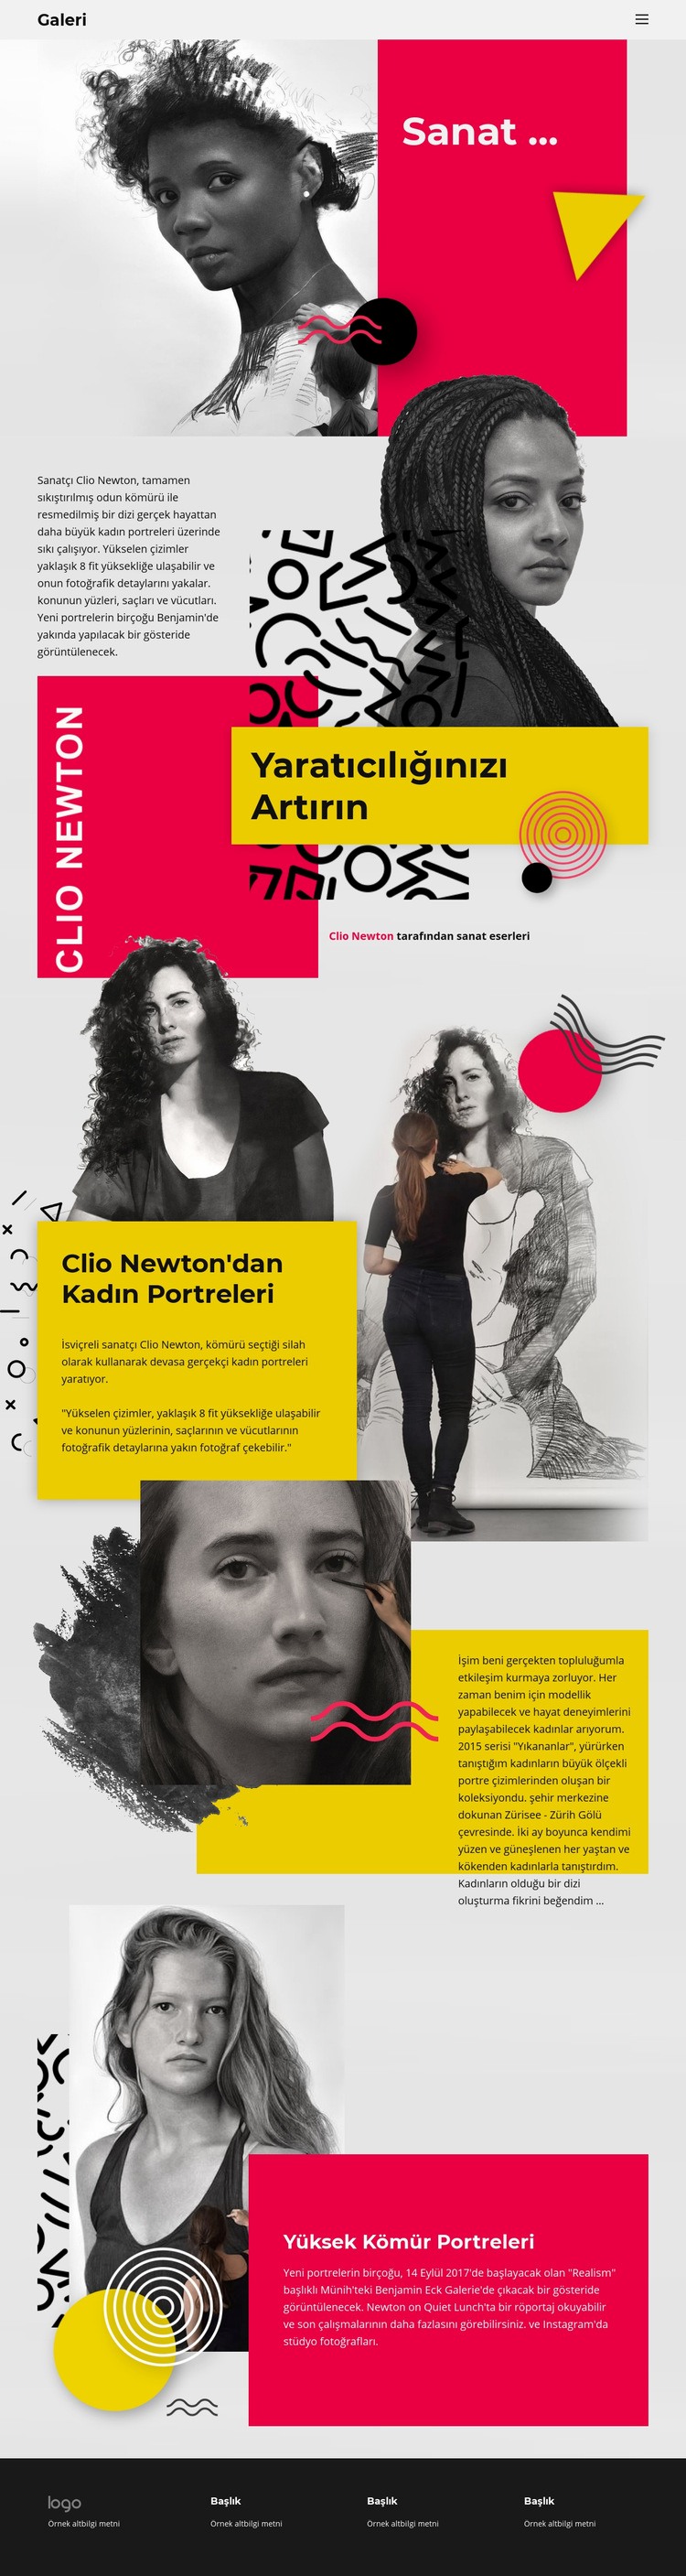 Clio Newton Açılış sayfası